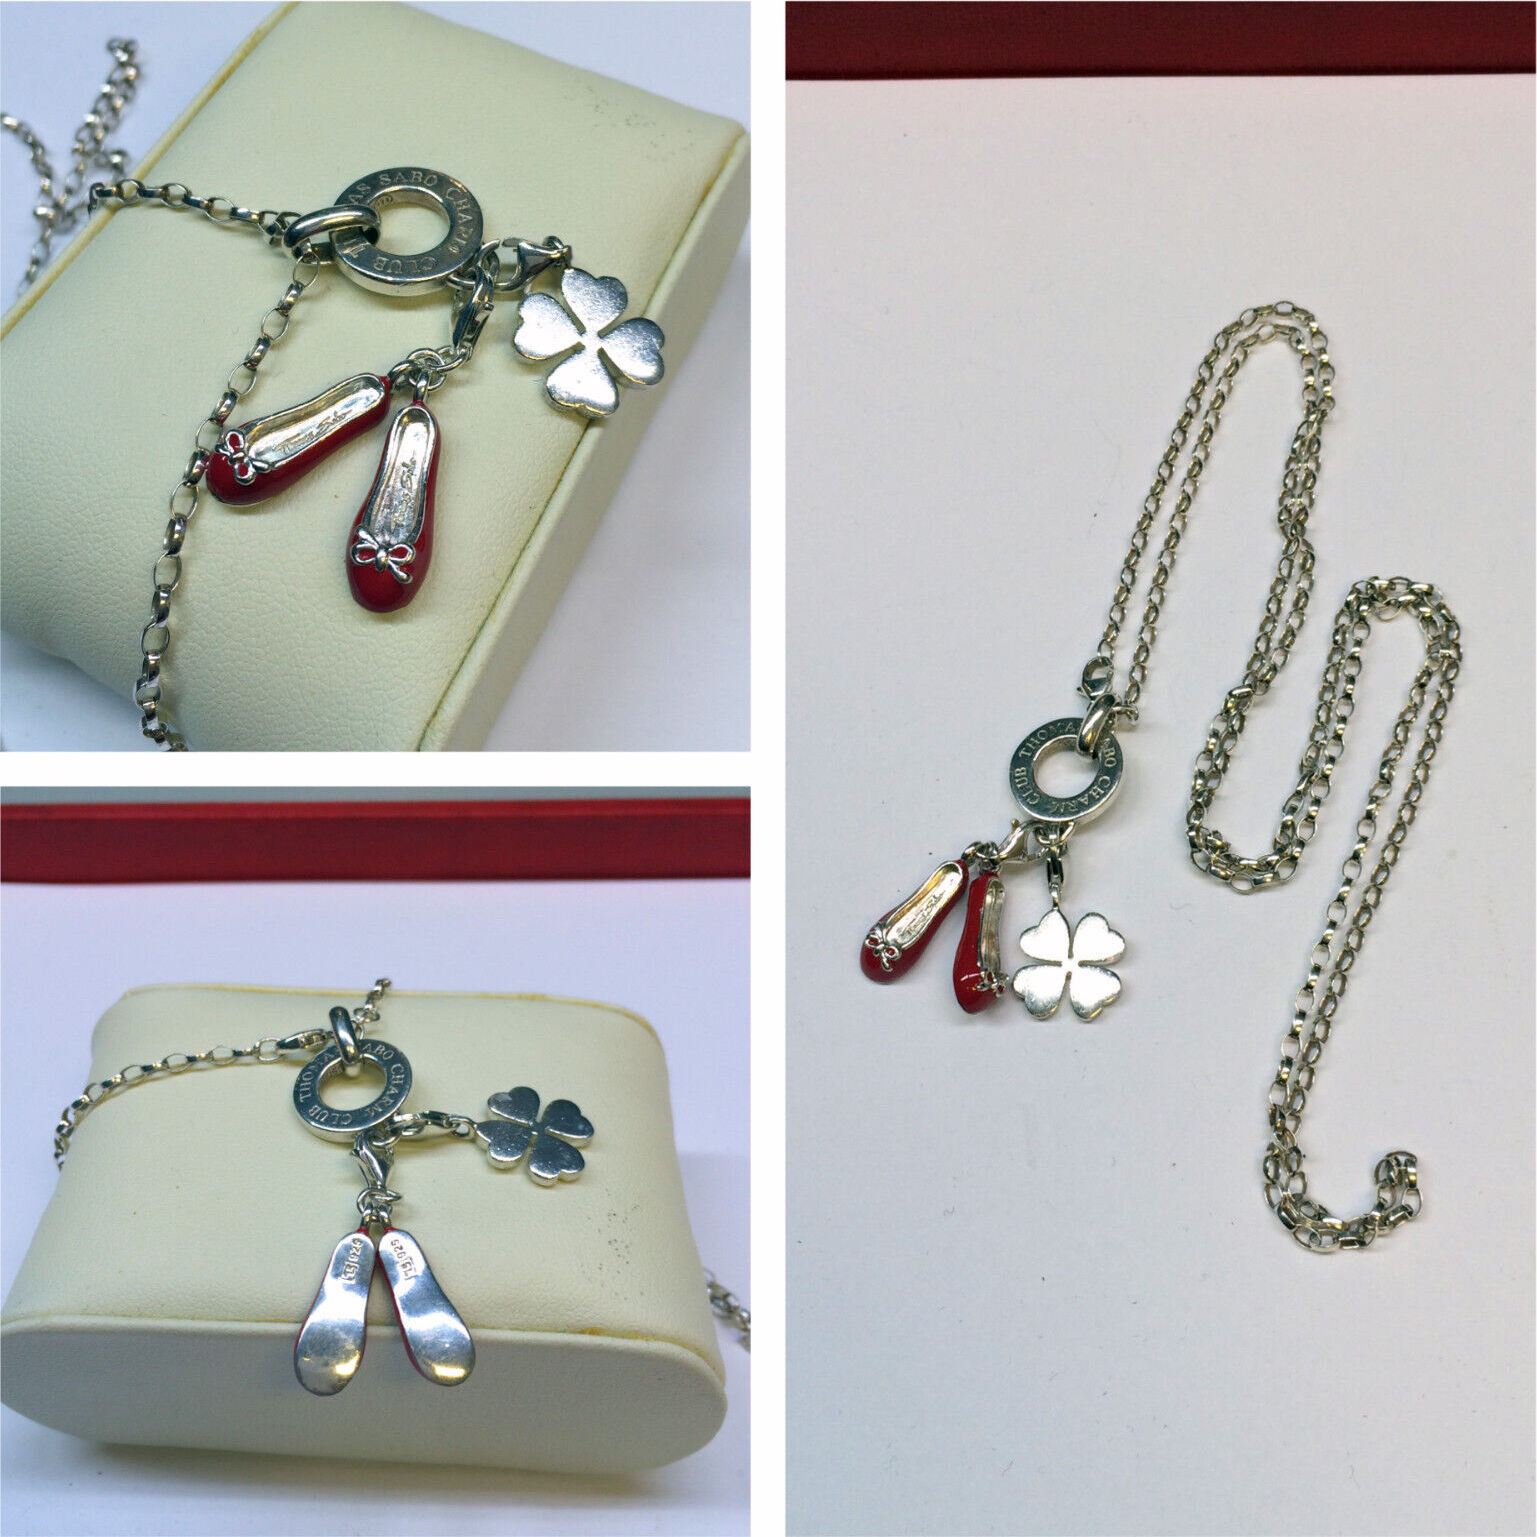 Silberkette mit charms Anhänger SABO von Ballerinas 925 und Kleeblatt THOMAS er | MA-Shops